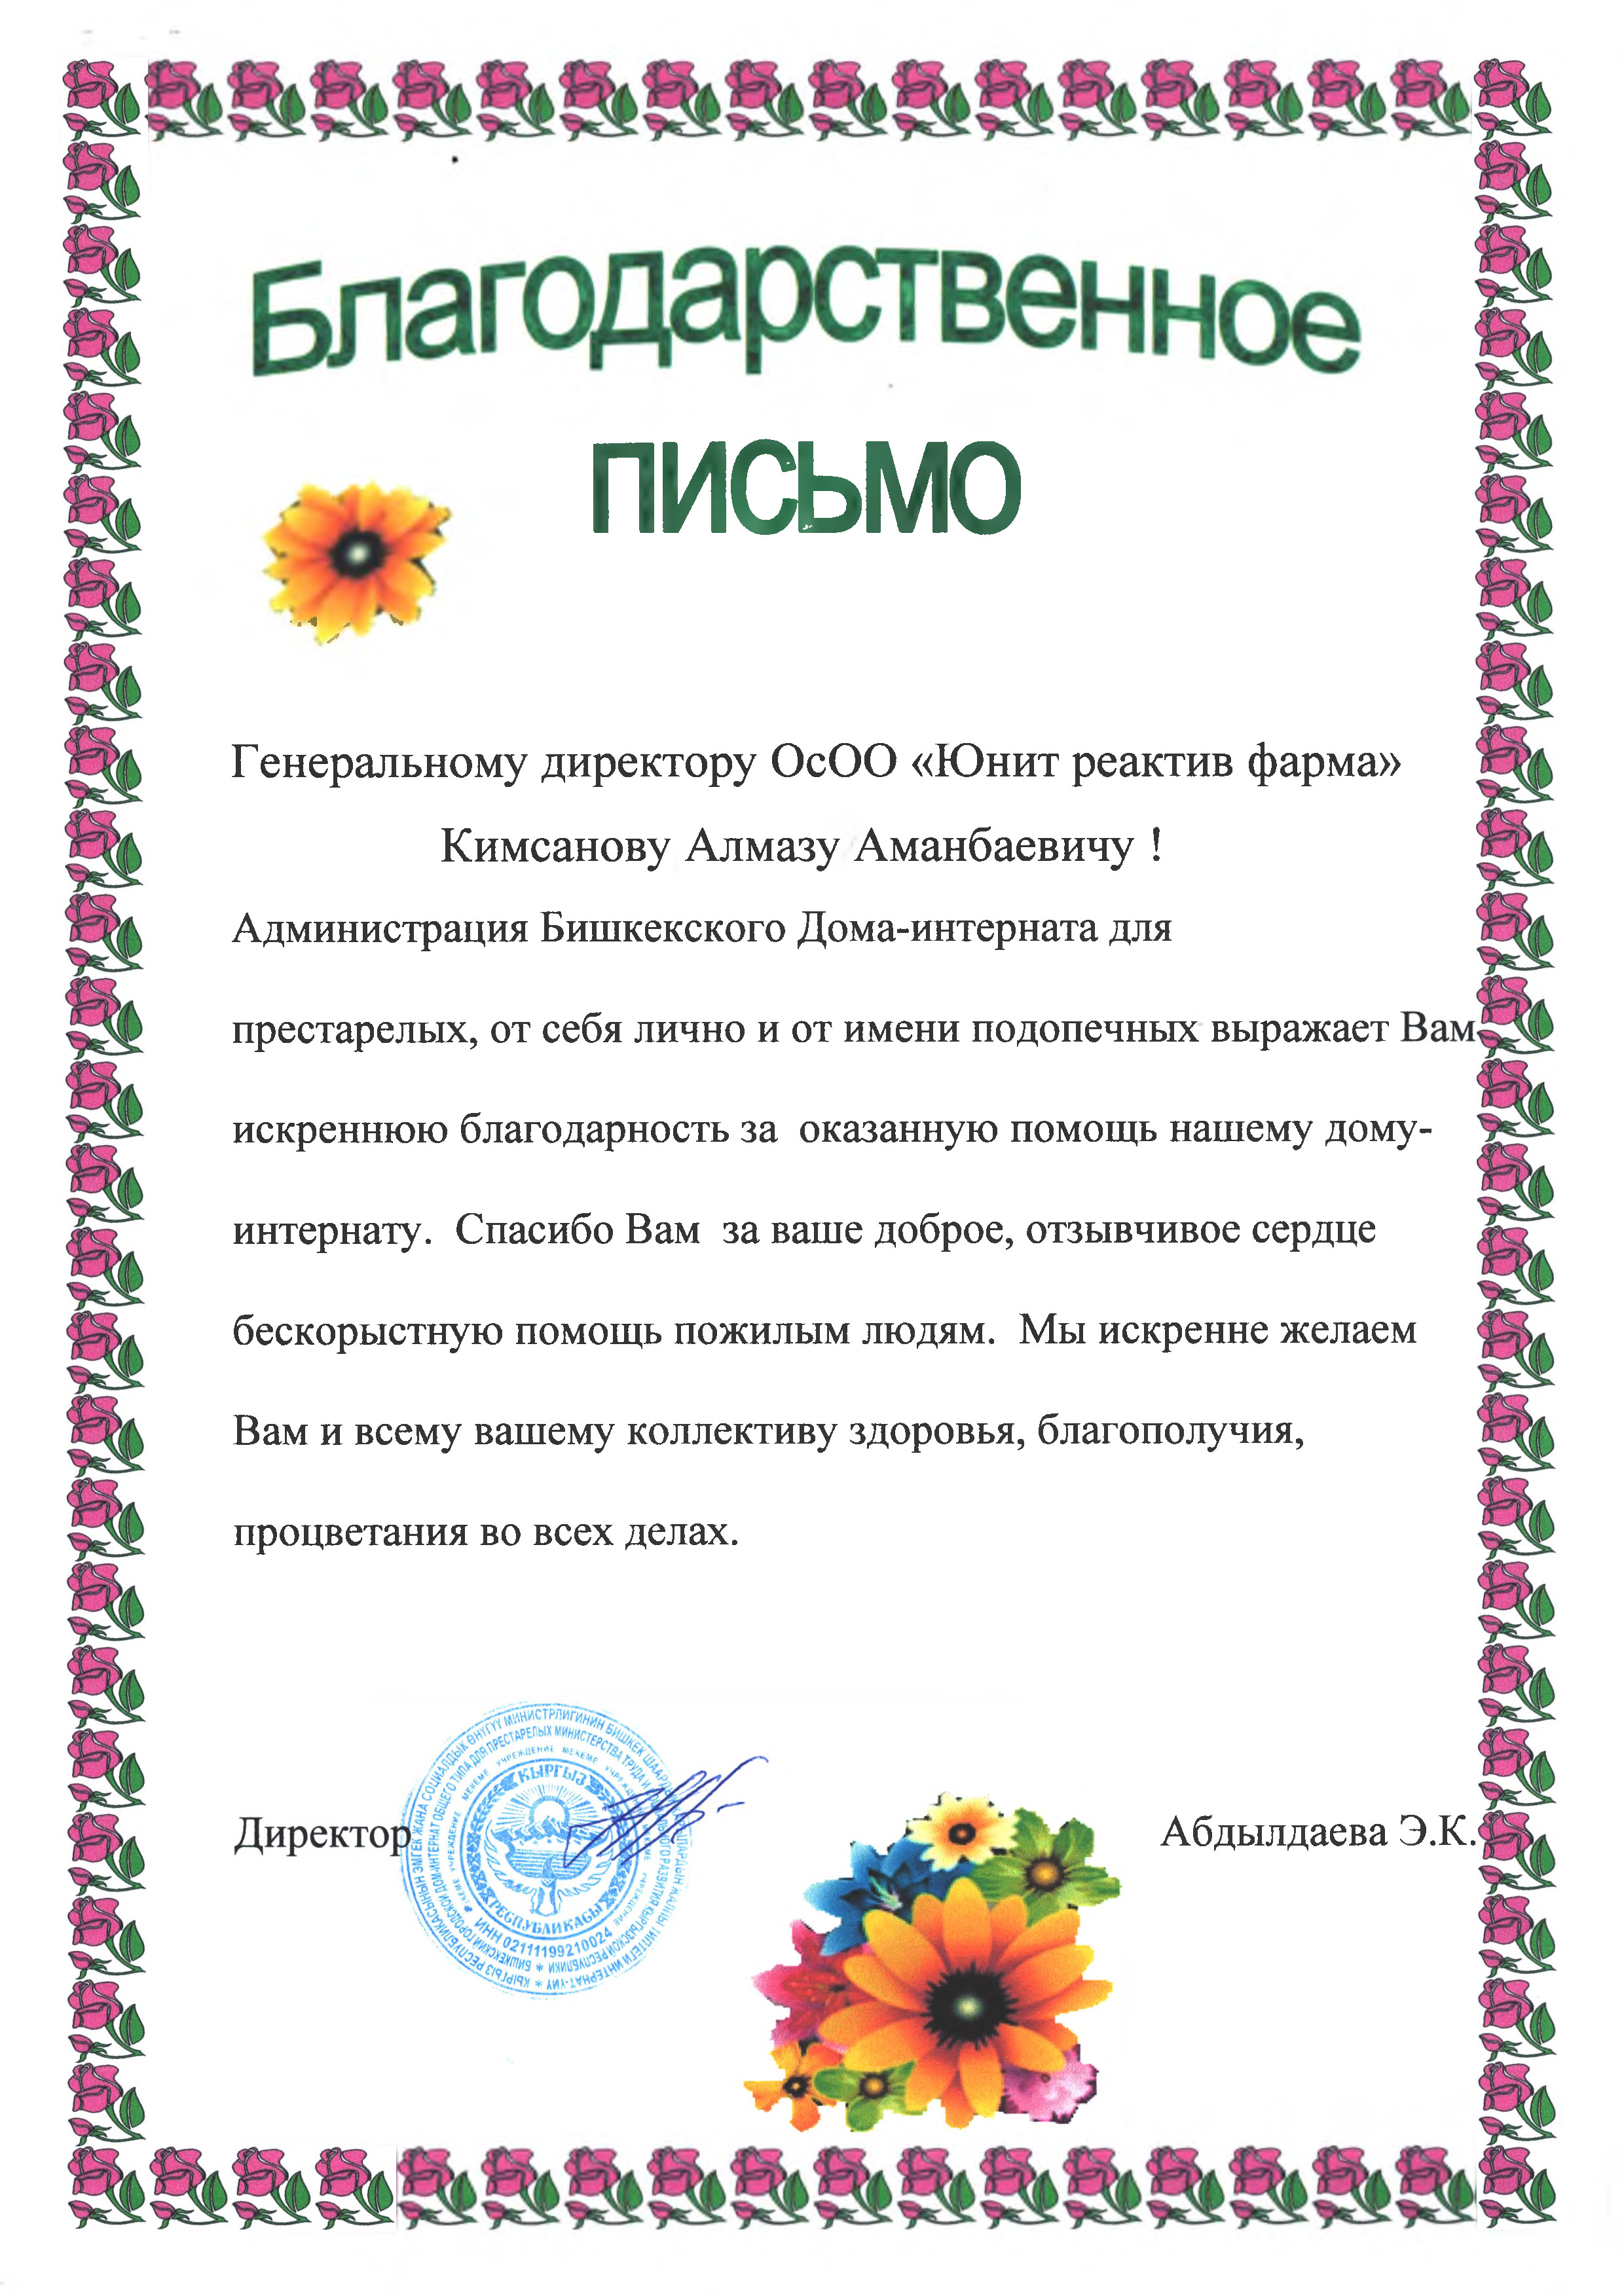 2021-bishkekskyi-gerontologicheskiy-dom-internat